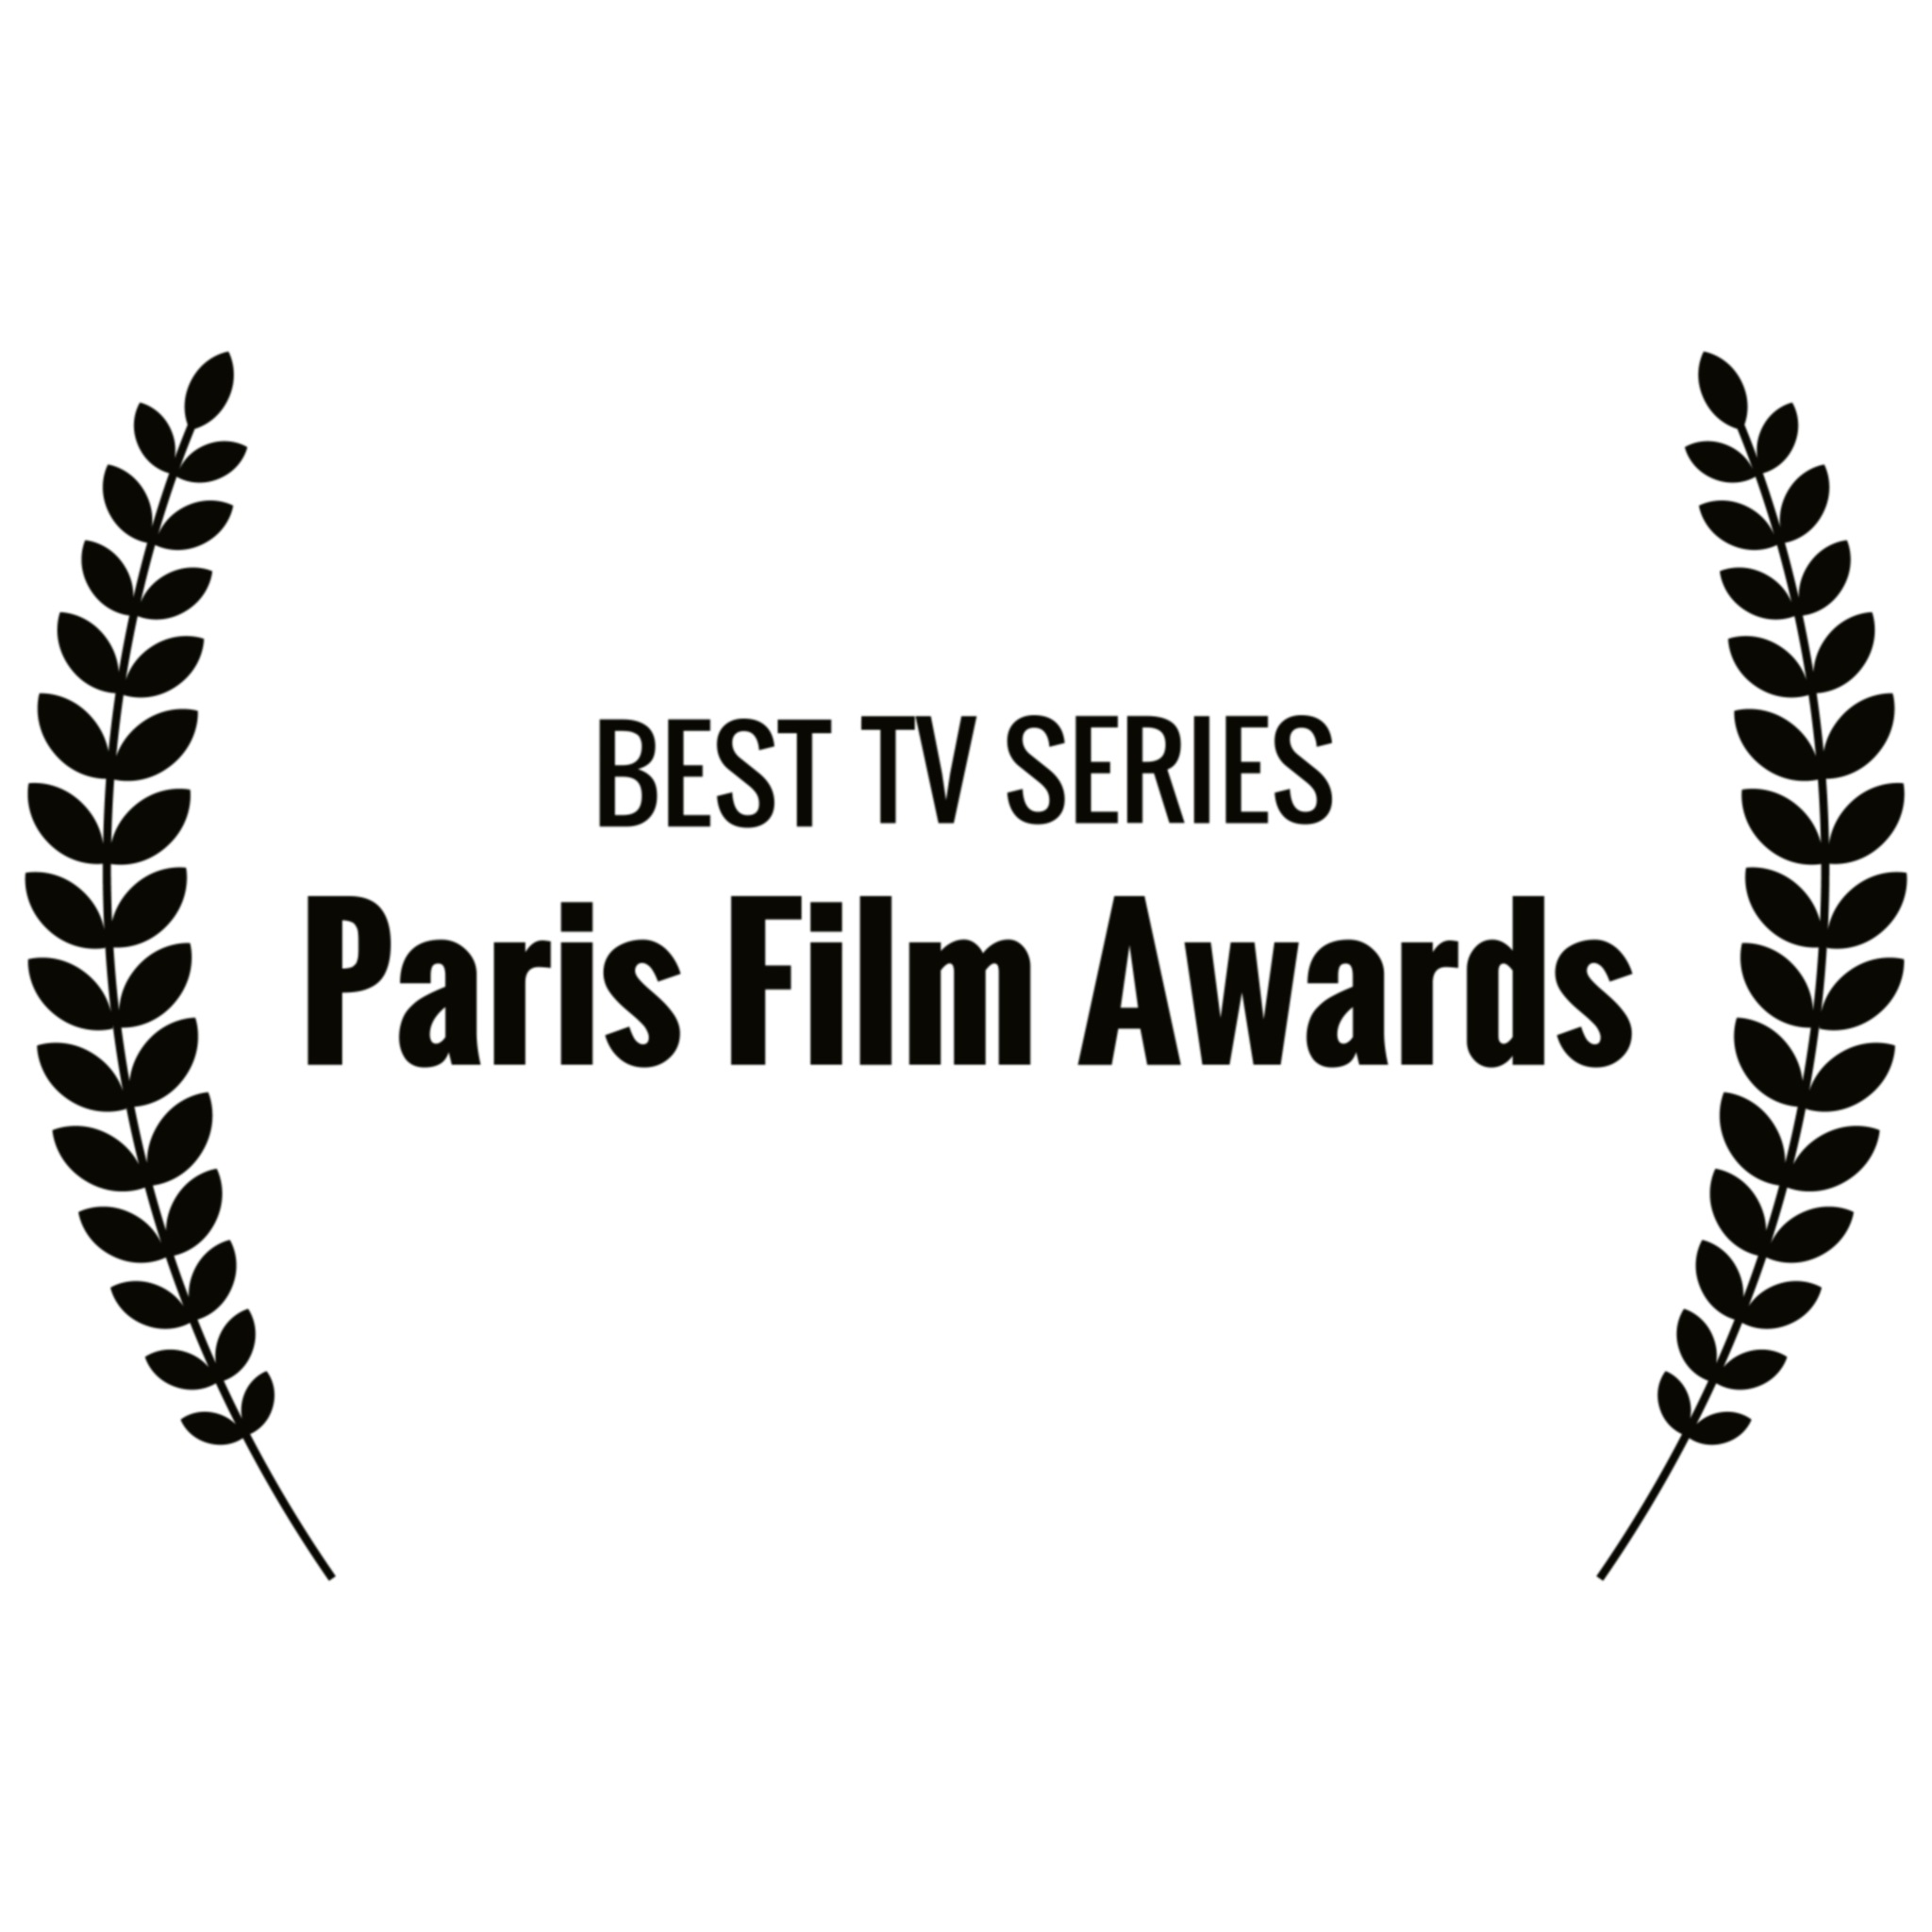 BEST TV SERIES - Paris Film Awards